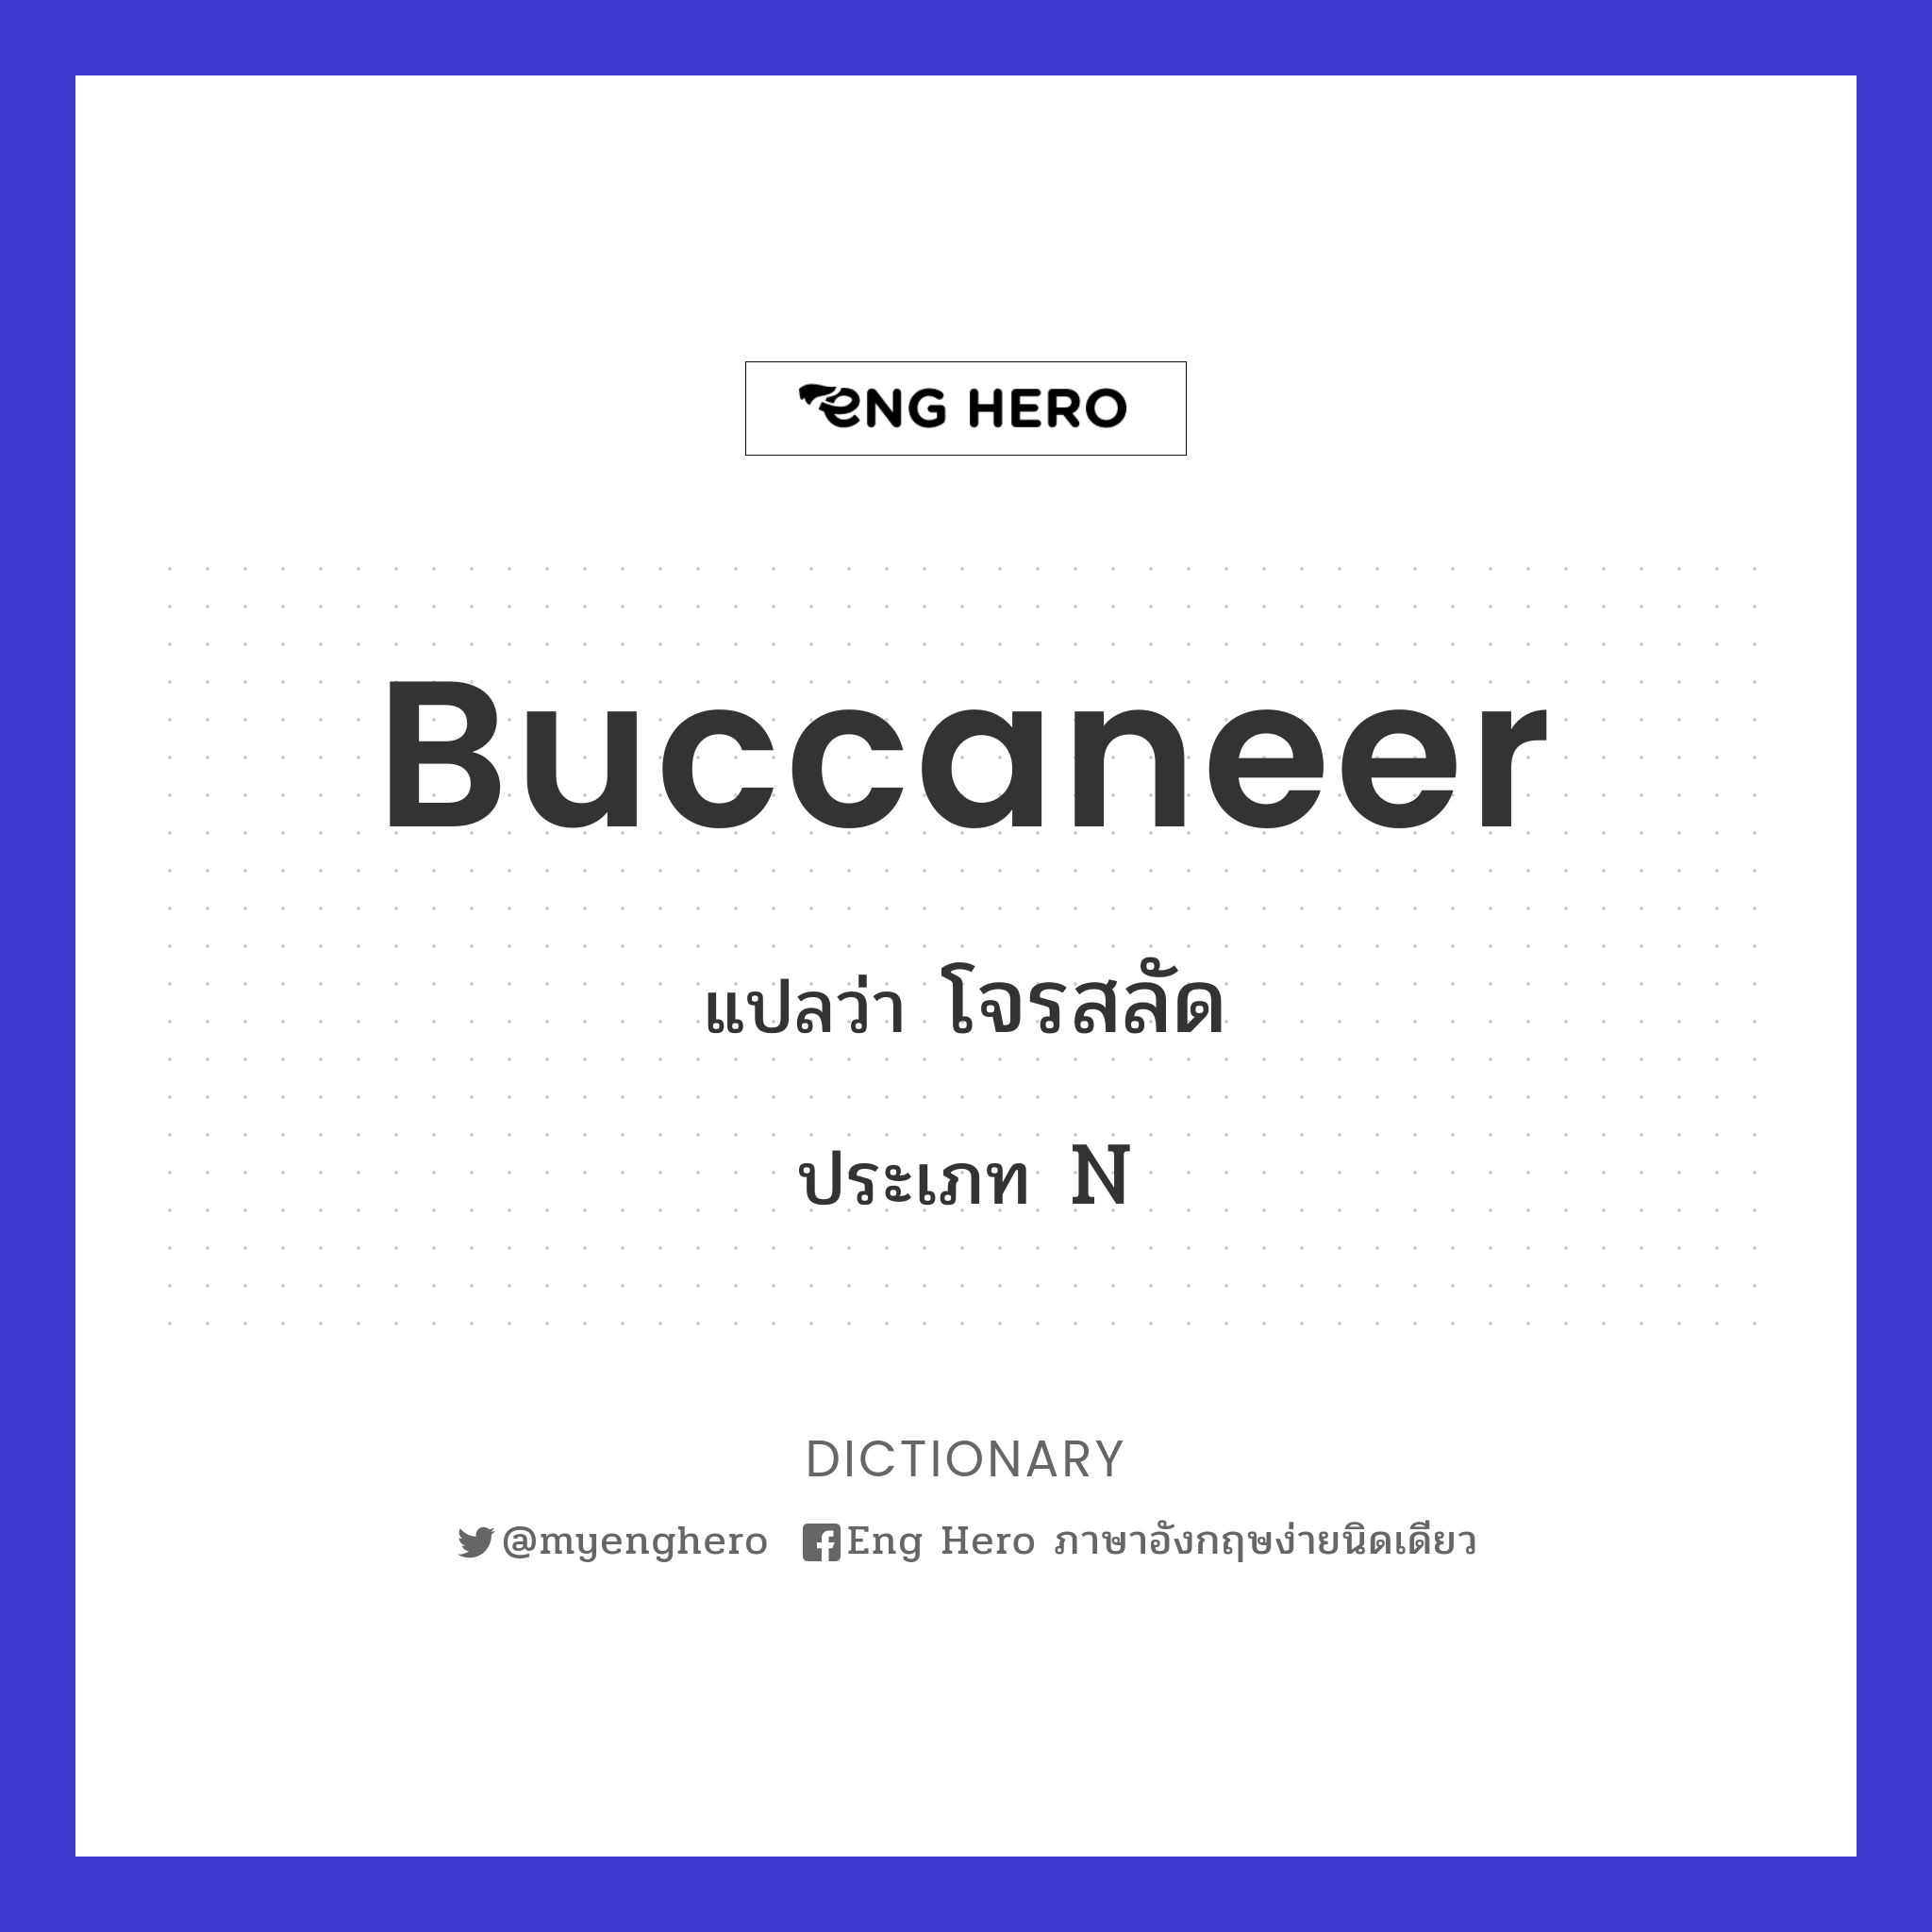 buccaneer